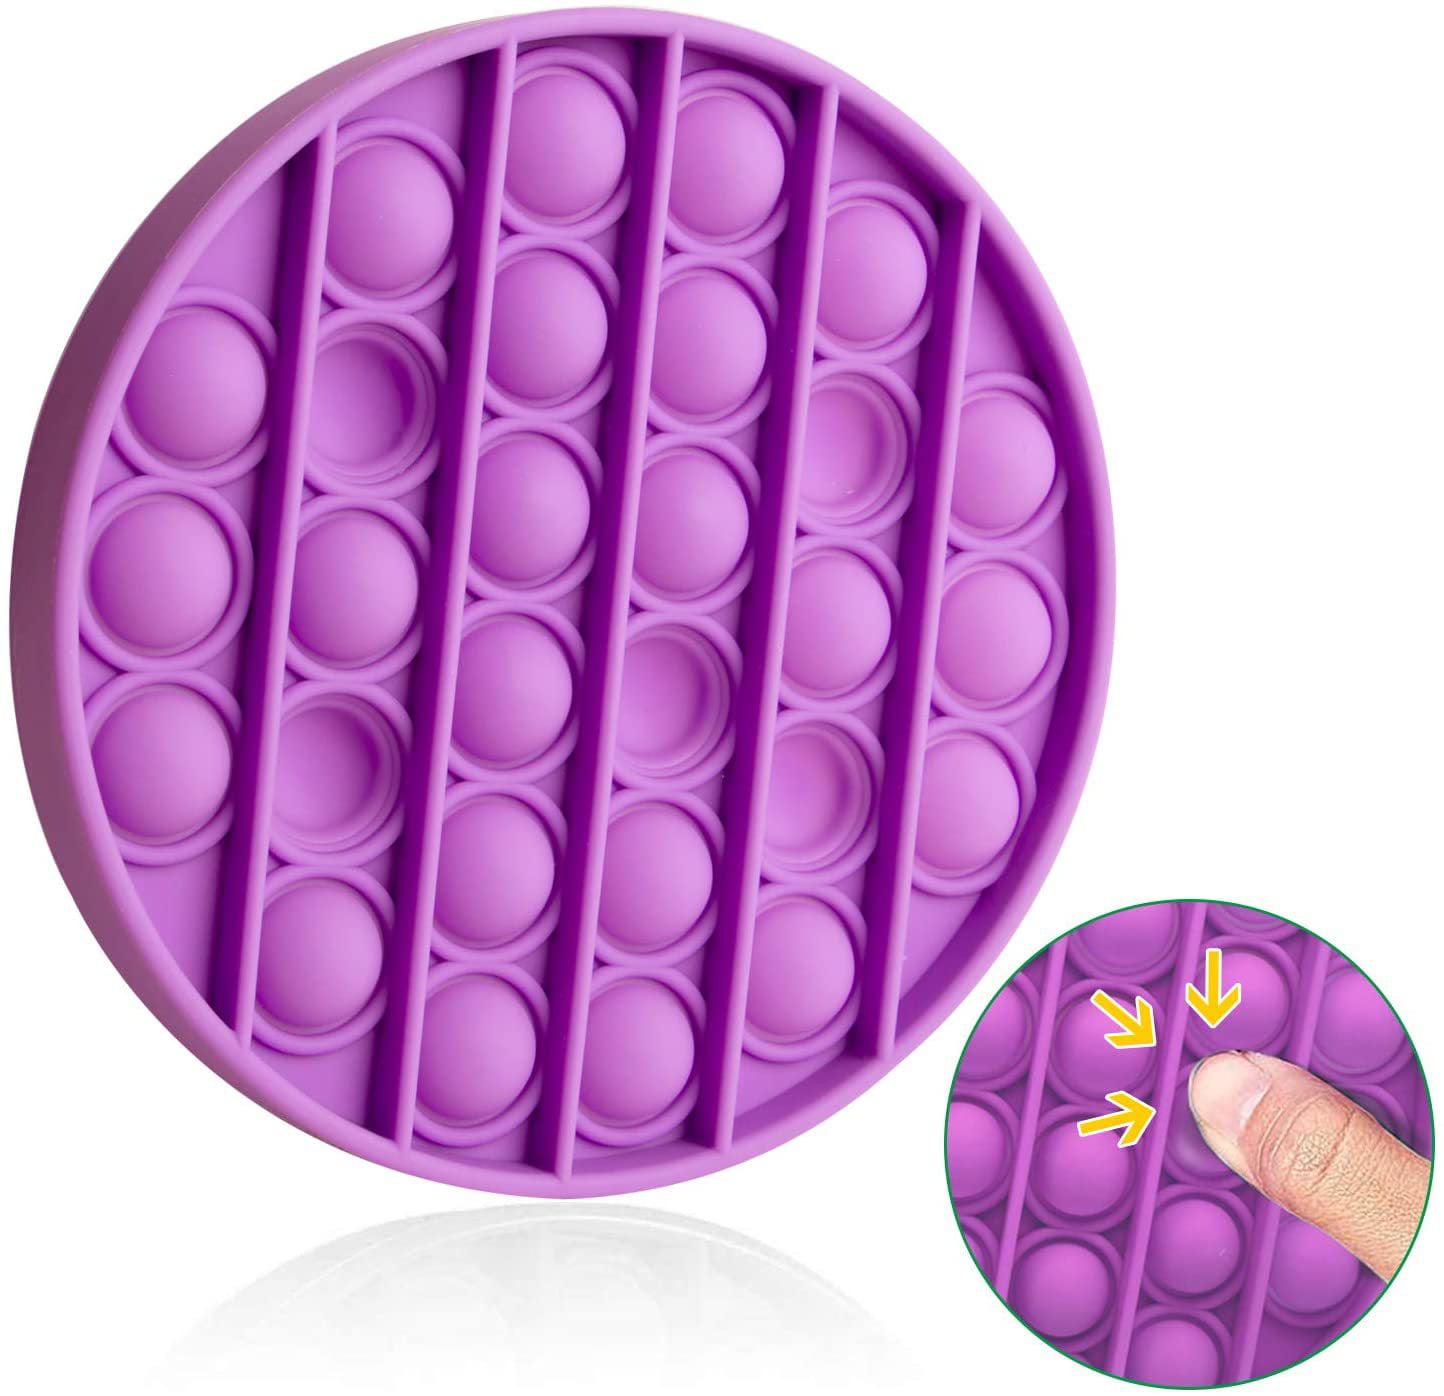 Push Pop for it Bubble Fidget Toy Sensory Stress Relief Special Needs Autism